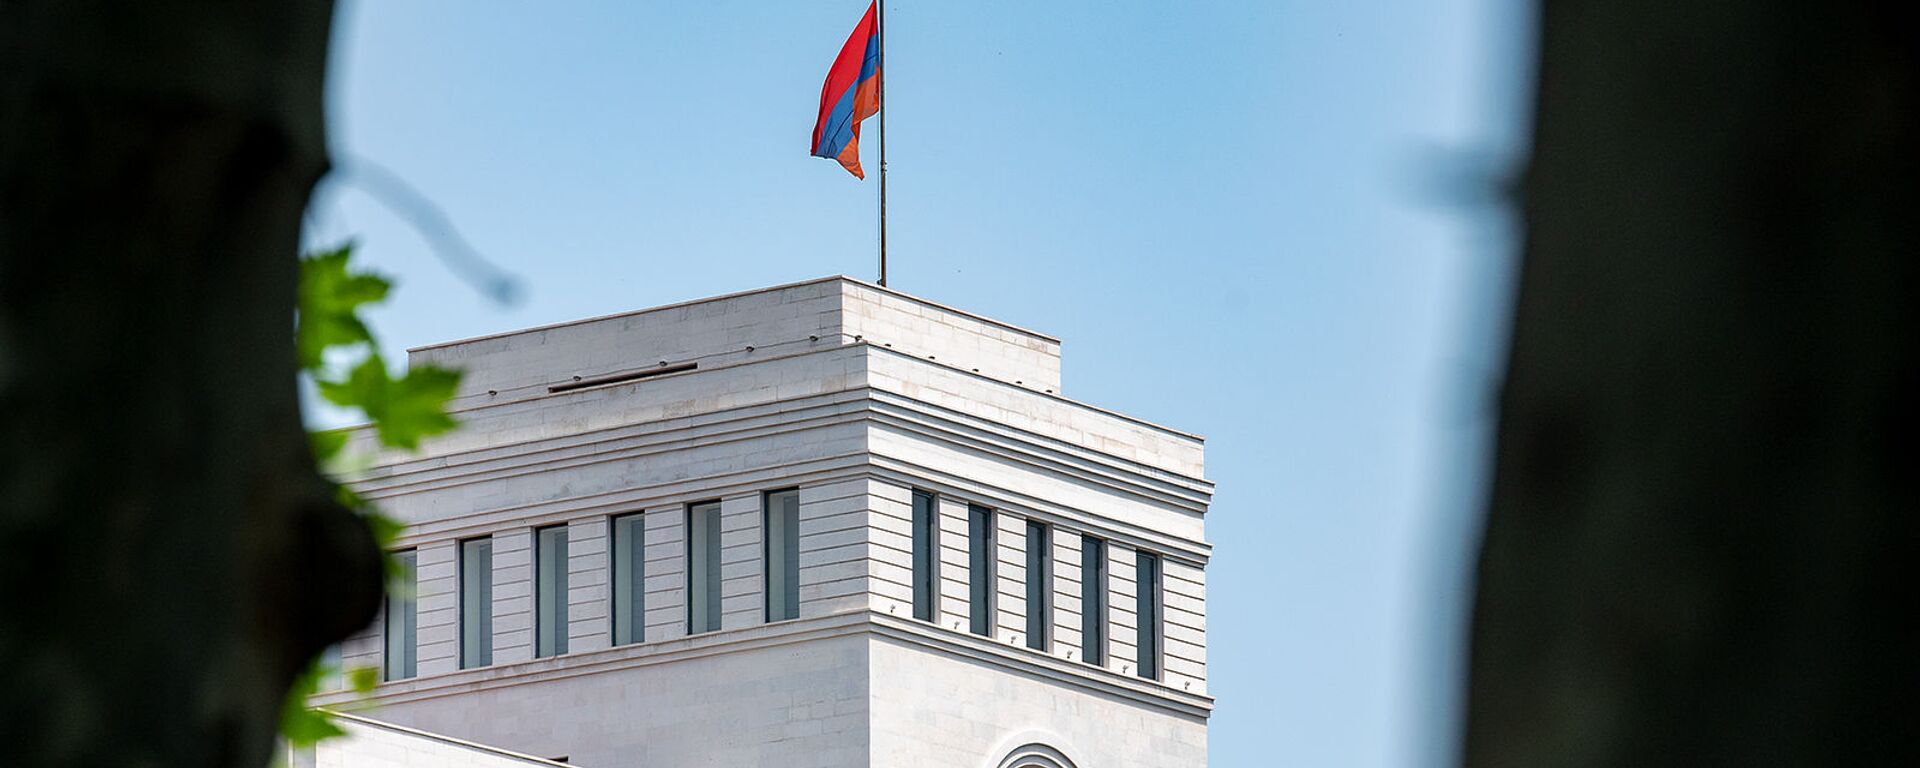 Здание Министерства иностранных дел Армении - Sputnik Армения, 1920, 04.06.2021